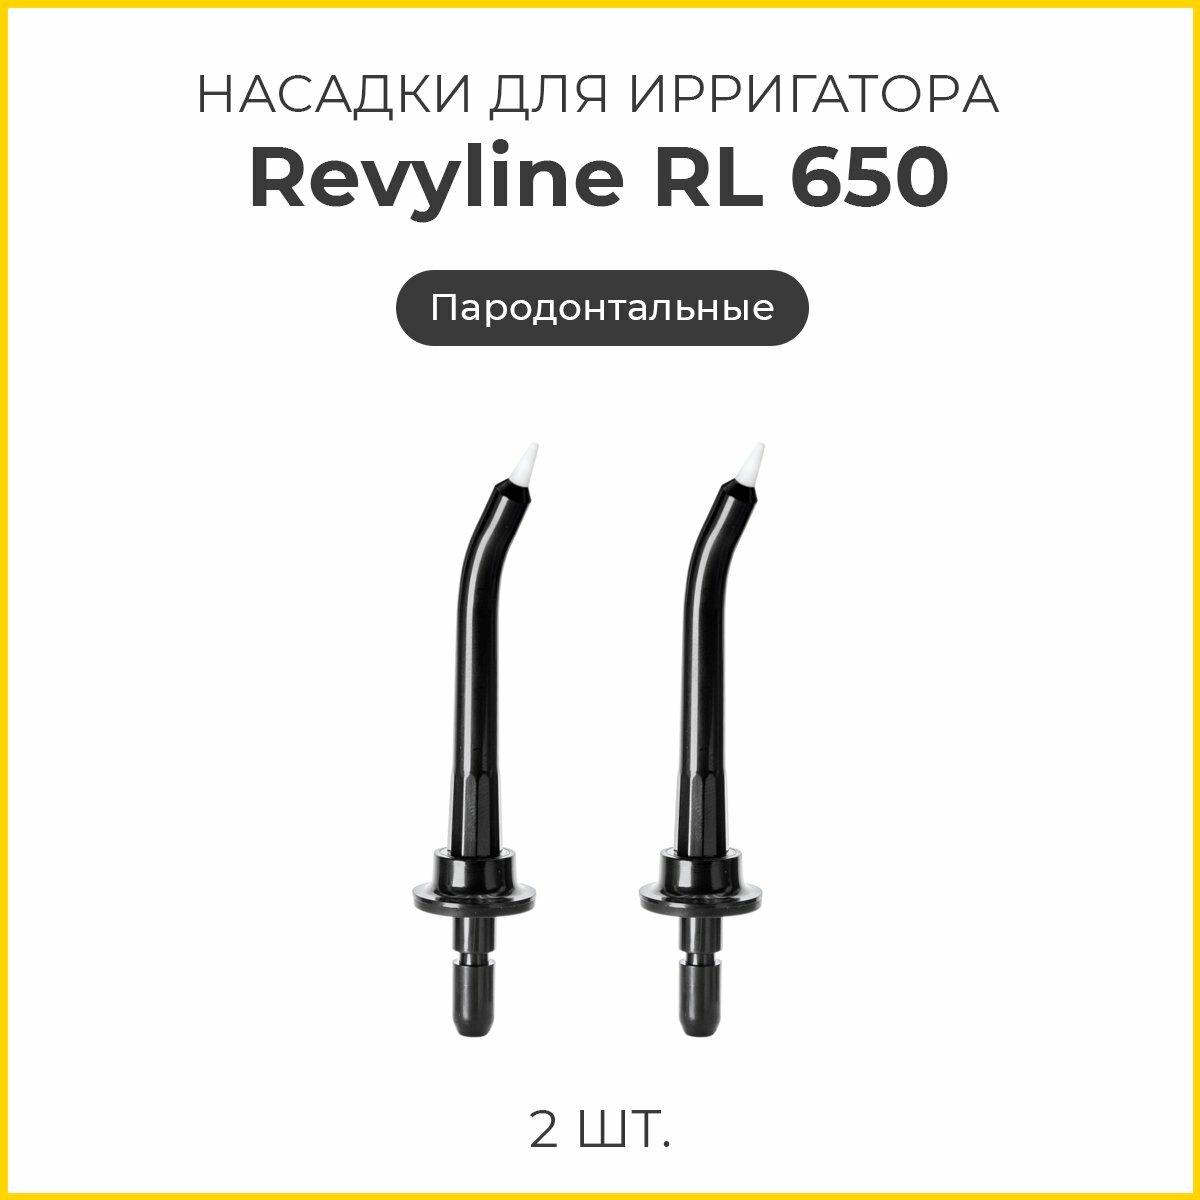 Сменные насадки для ирригатора Revyline RL 650 пародонтологические, черные, 2 шт.